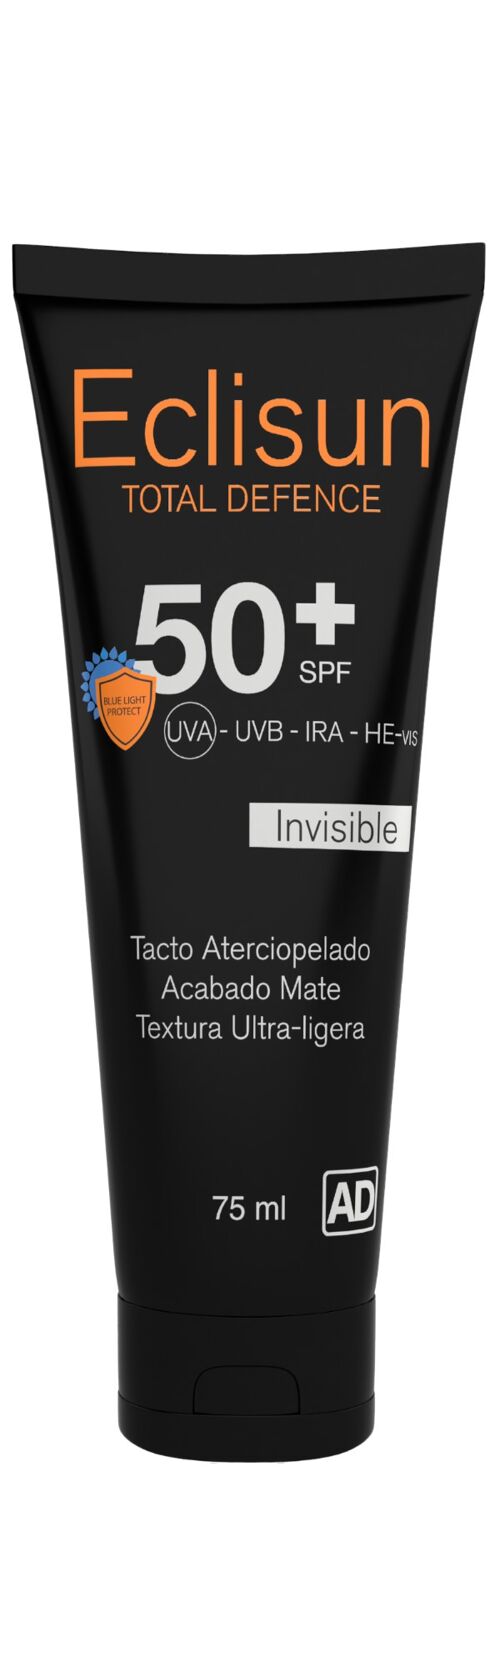 Eclisun Total Defence SPF 50+ Facial Invisible